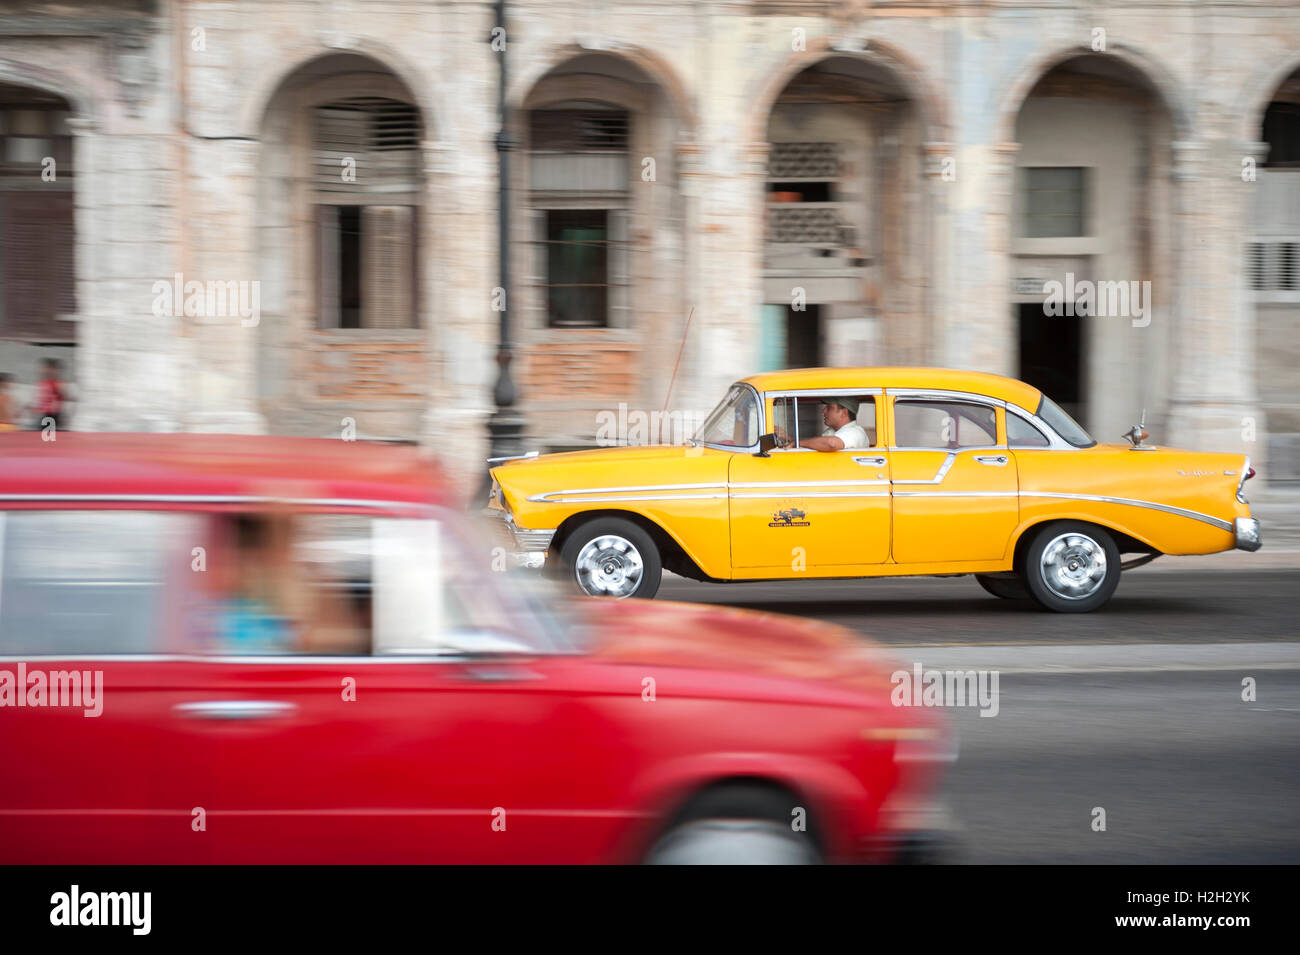 L'Avana - Giugno 13, 2011: vivacemente colorato vintage americano auto taxi condividono la strada in motion blur sul lungomare Malecon. Foto Stock